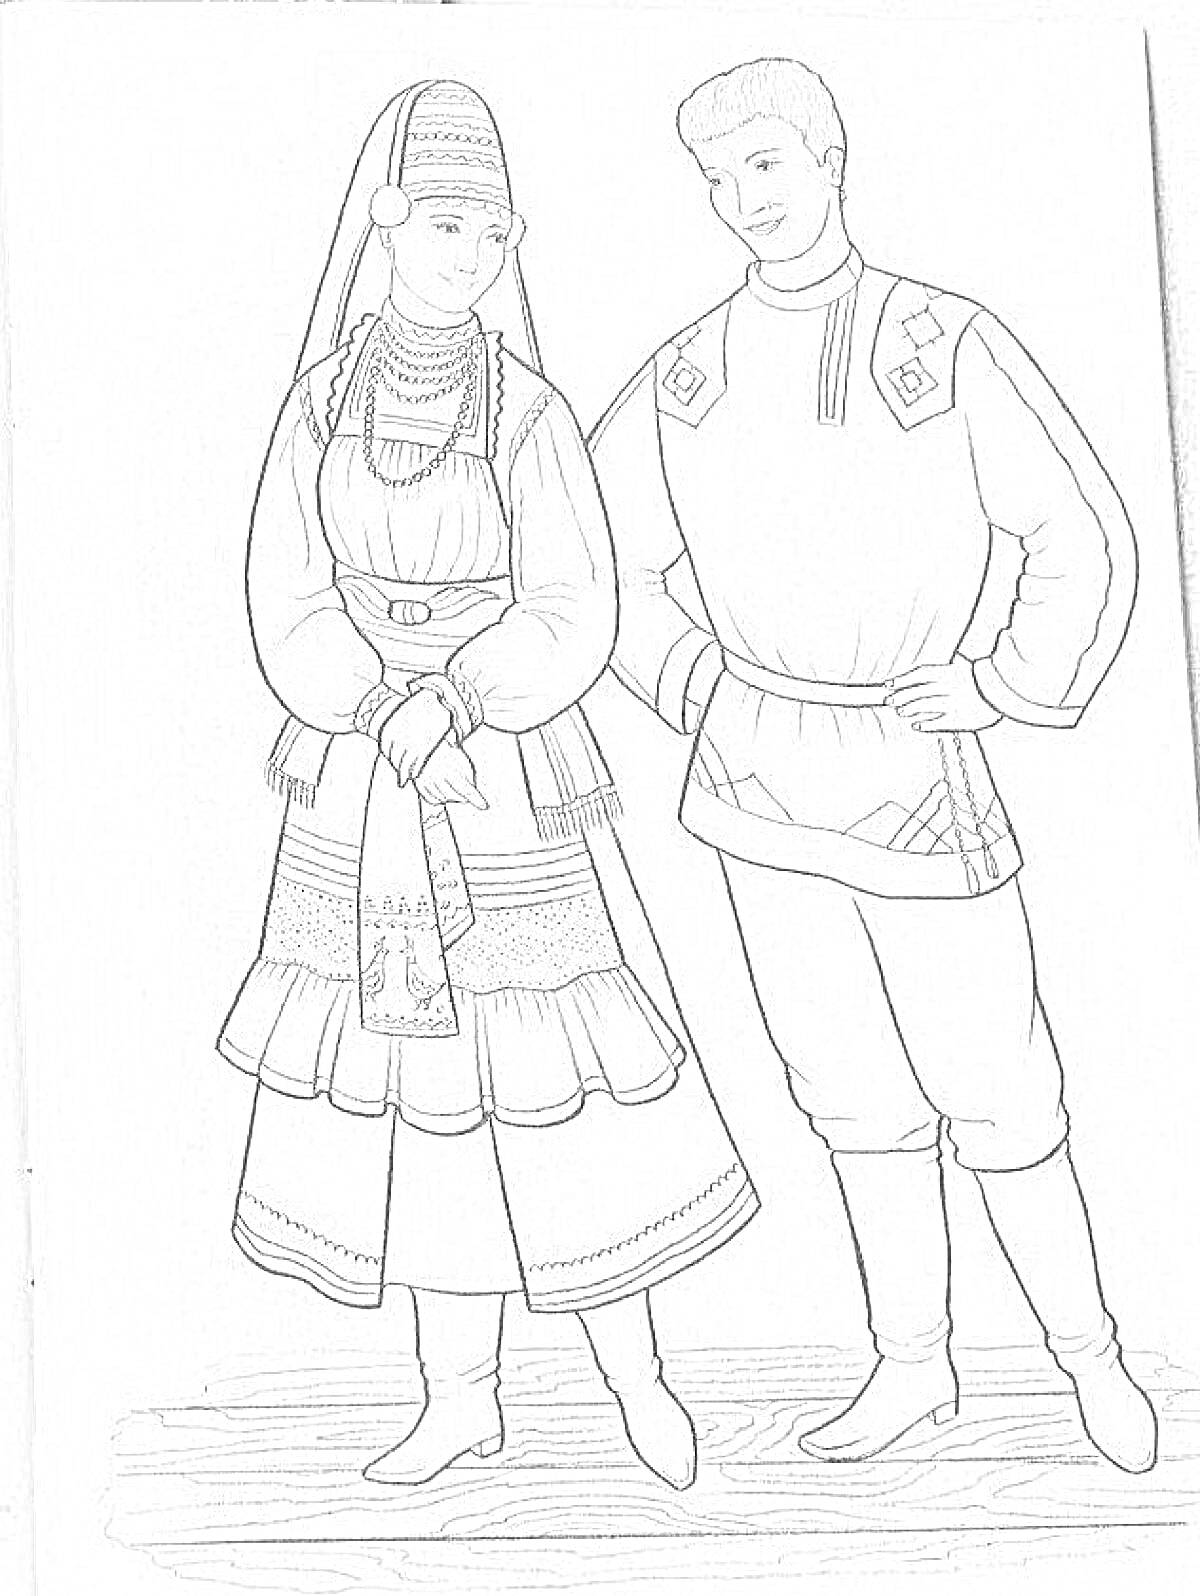 Раскраска Чувашский национальный костюм мужской и женский, включая головной убор, фартук, рубаху, пояс, юбку, штаны и обувь.